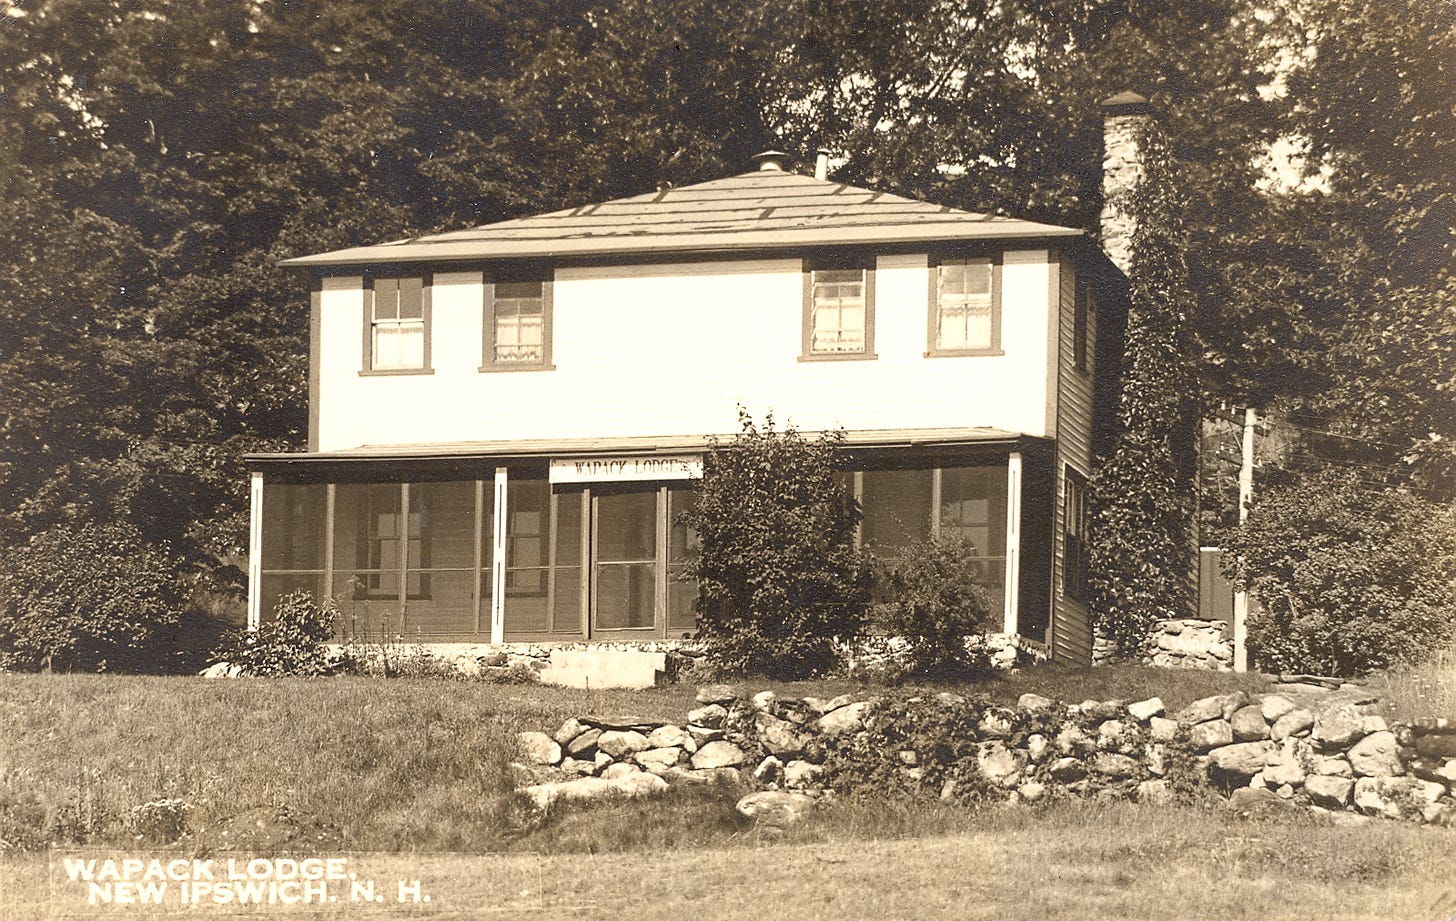 Wapack Lodge